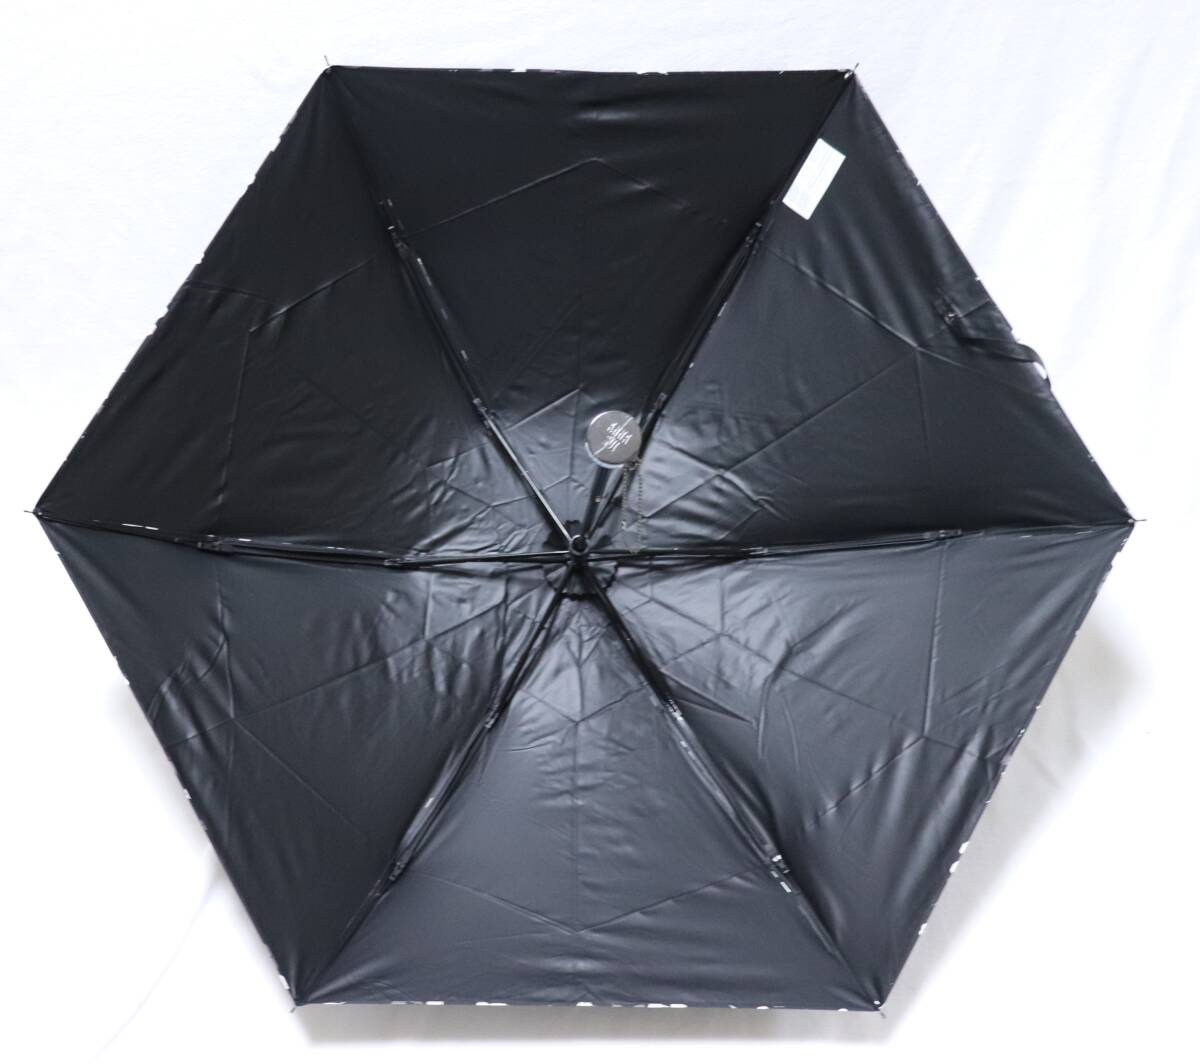 《ANNA SUI アナスイ》新品 上品ボタニカル柄 晴雨兼用折りたたみ傘 日傘 雨傘 遮光・遮蔽率99%以上 指にやさしいはじきカバー付き A9677